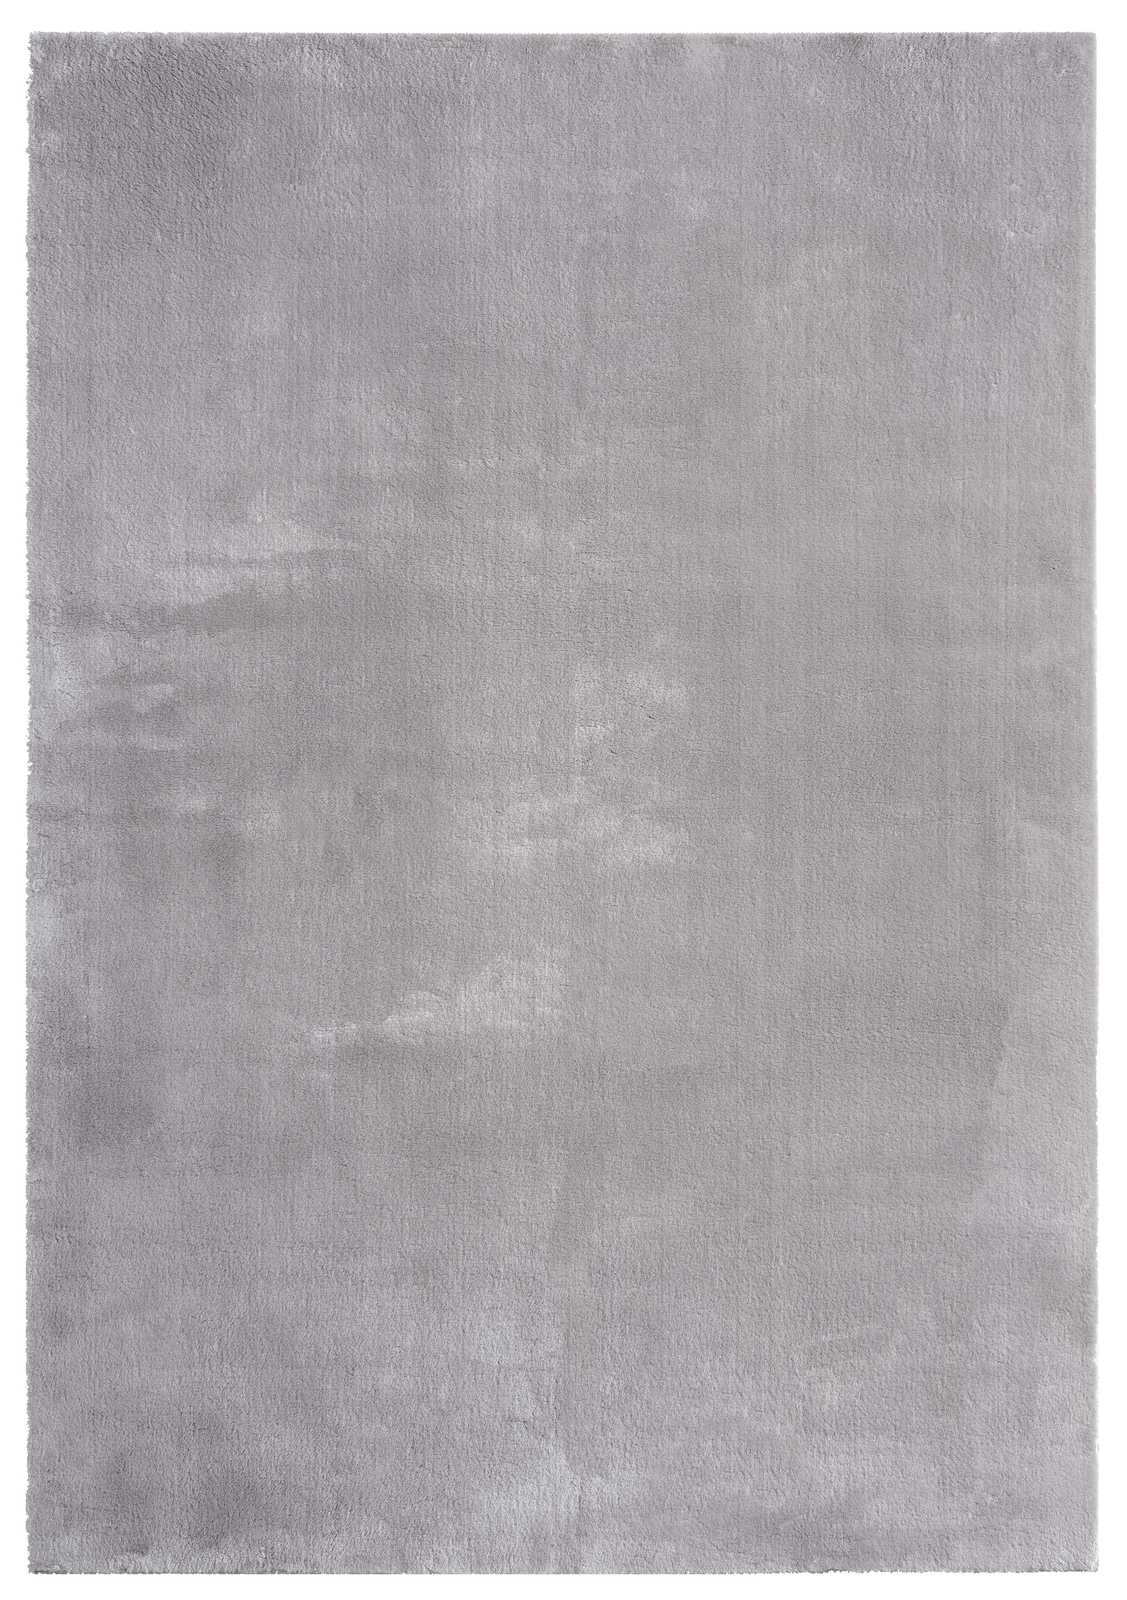             Fijn hoogpolig tapijt in grijs - 170 x 120 cm
        